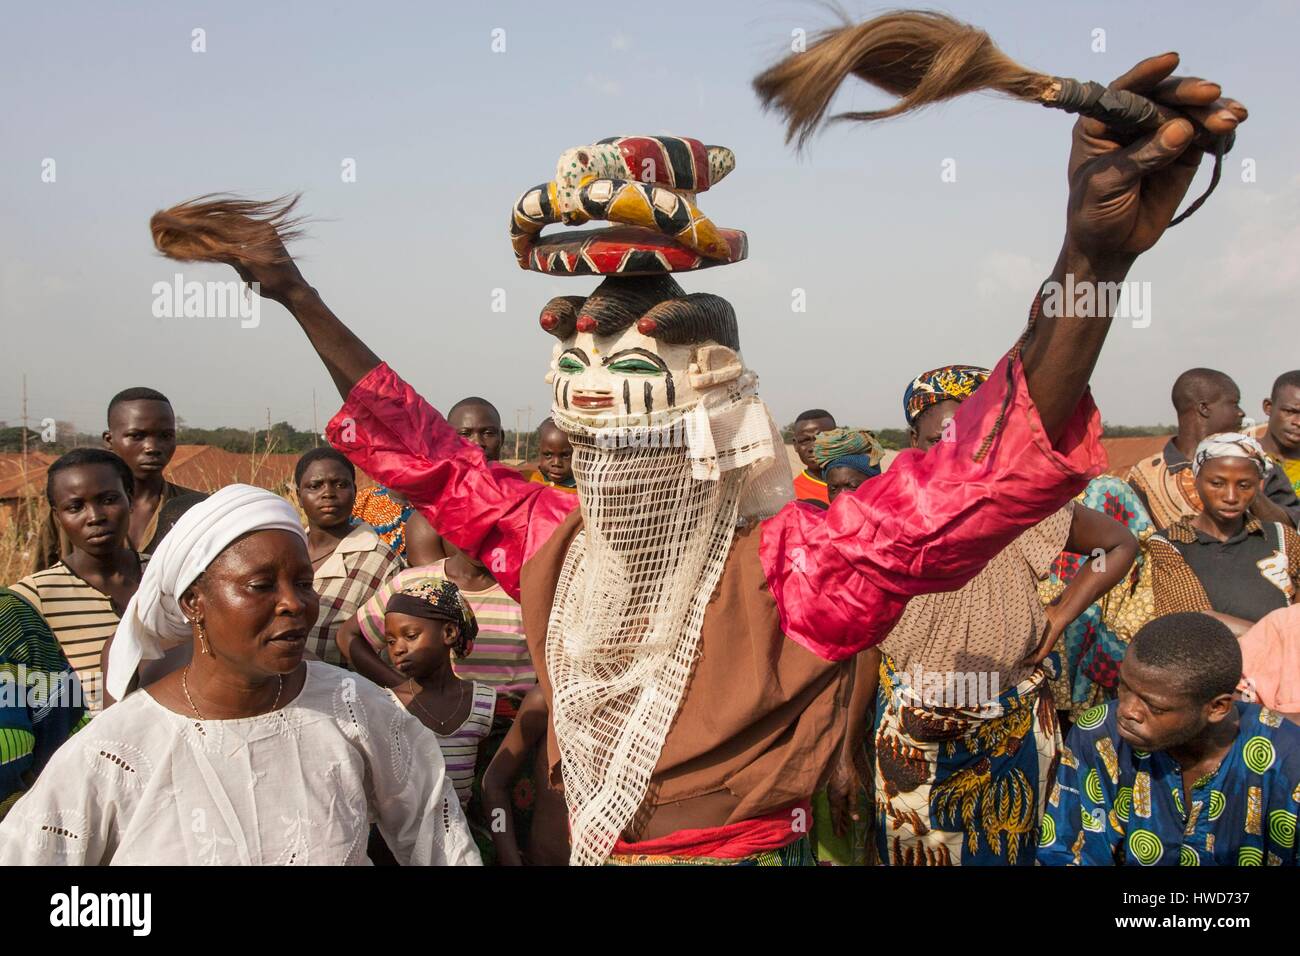 Le Bénin, au sud-est, région de Ketou, masques Gélédé classé comme un patrimoine immatériel de l'humanité, dans les Yoroubas, à Ketou le masque est surmonté par des personnages parfois comme des marionnettes articulées Banque D'Images